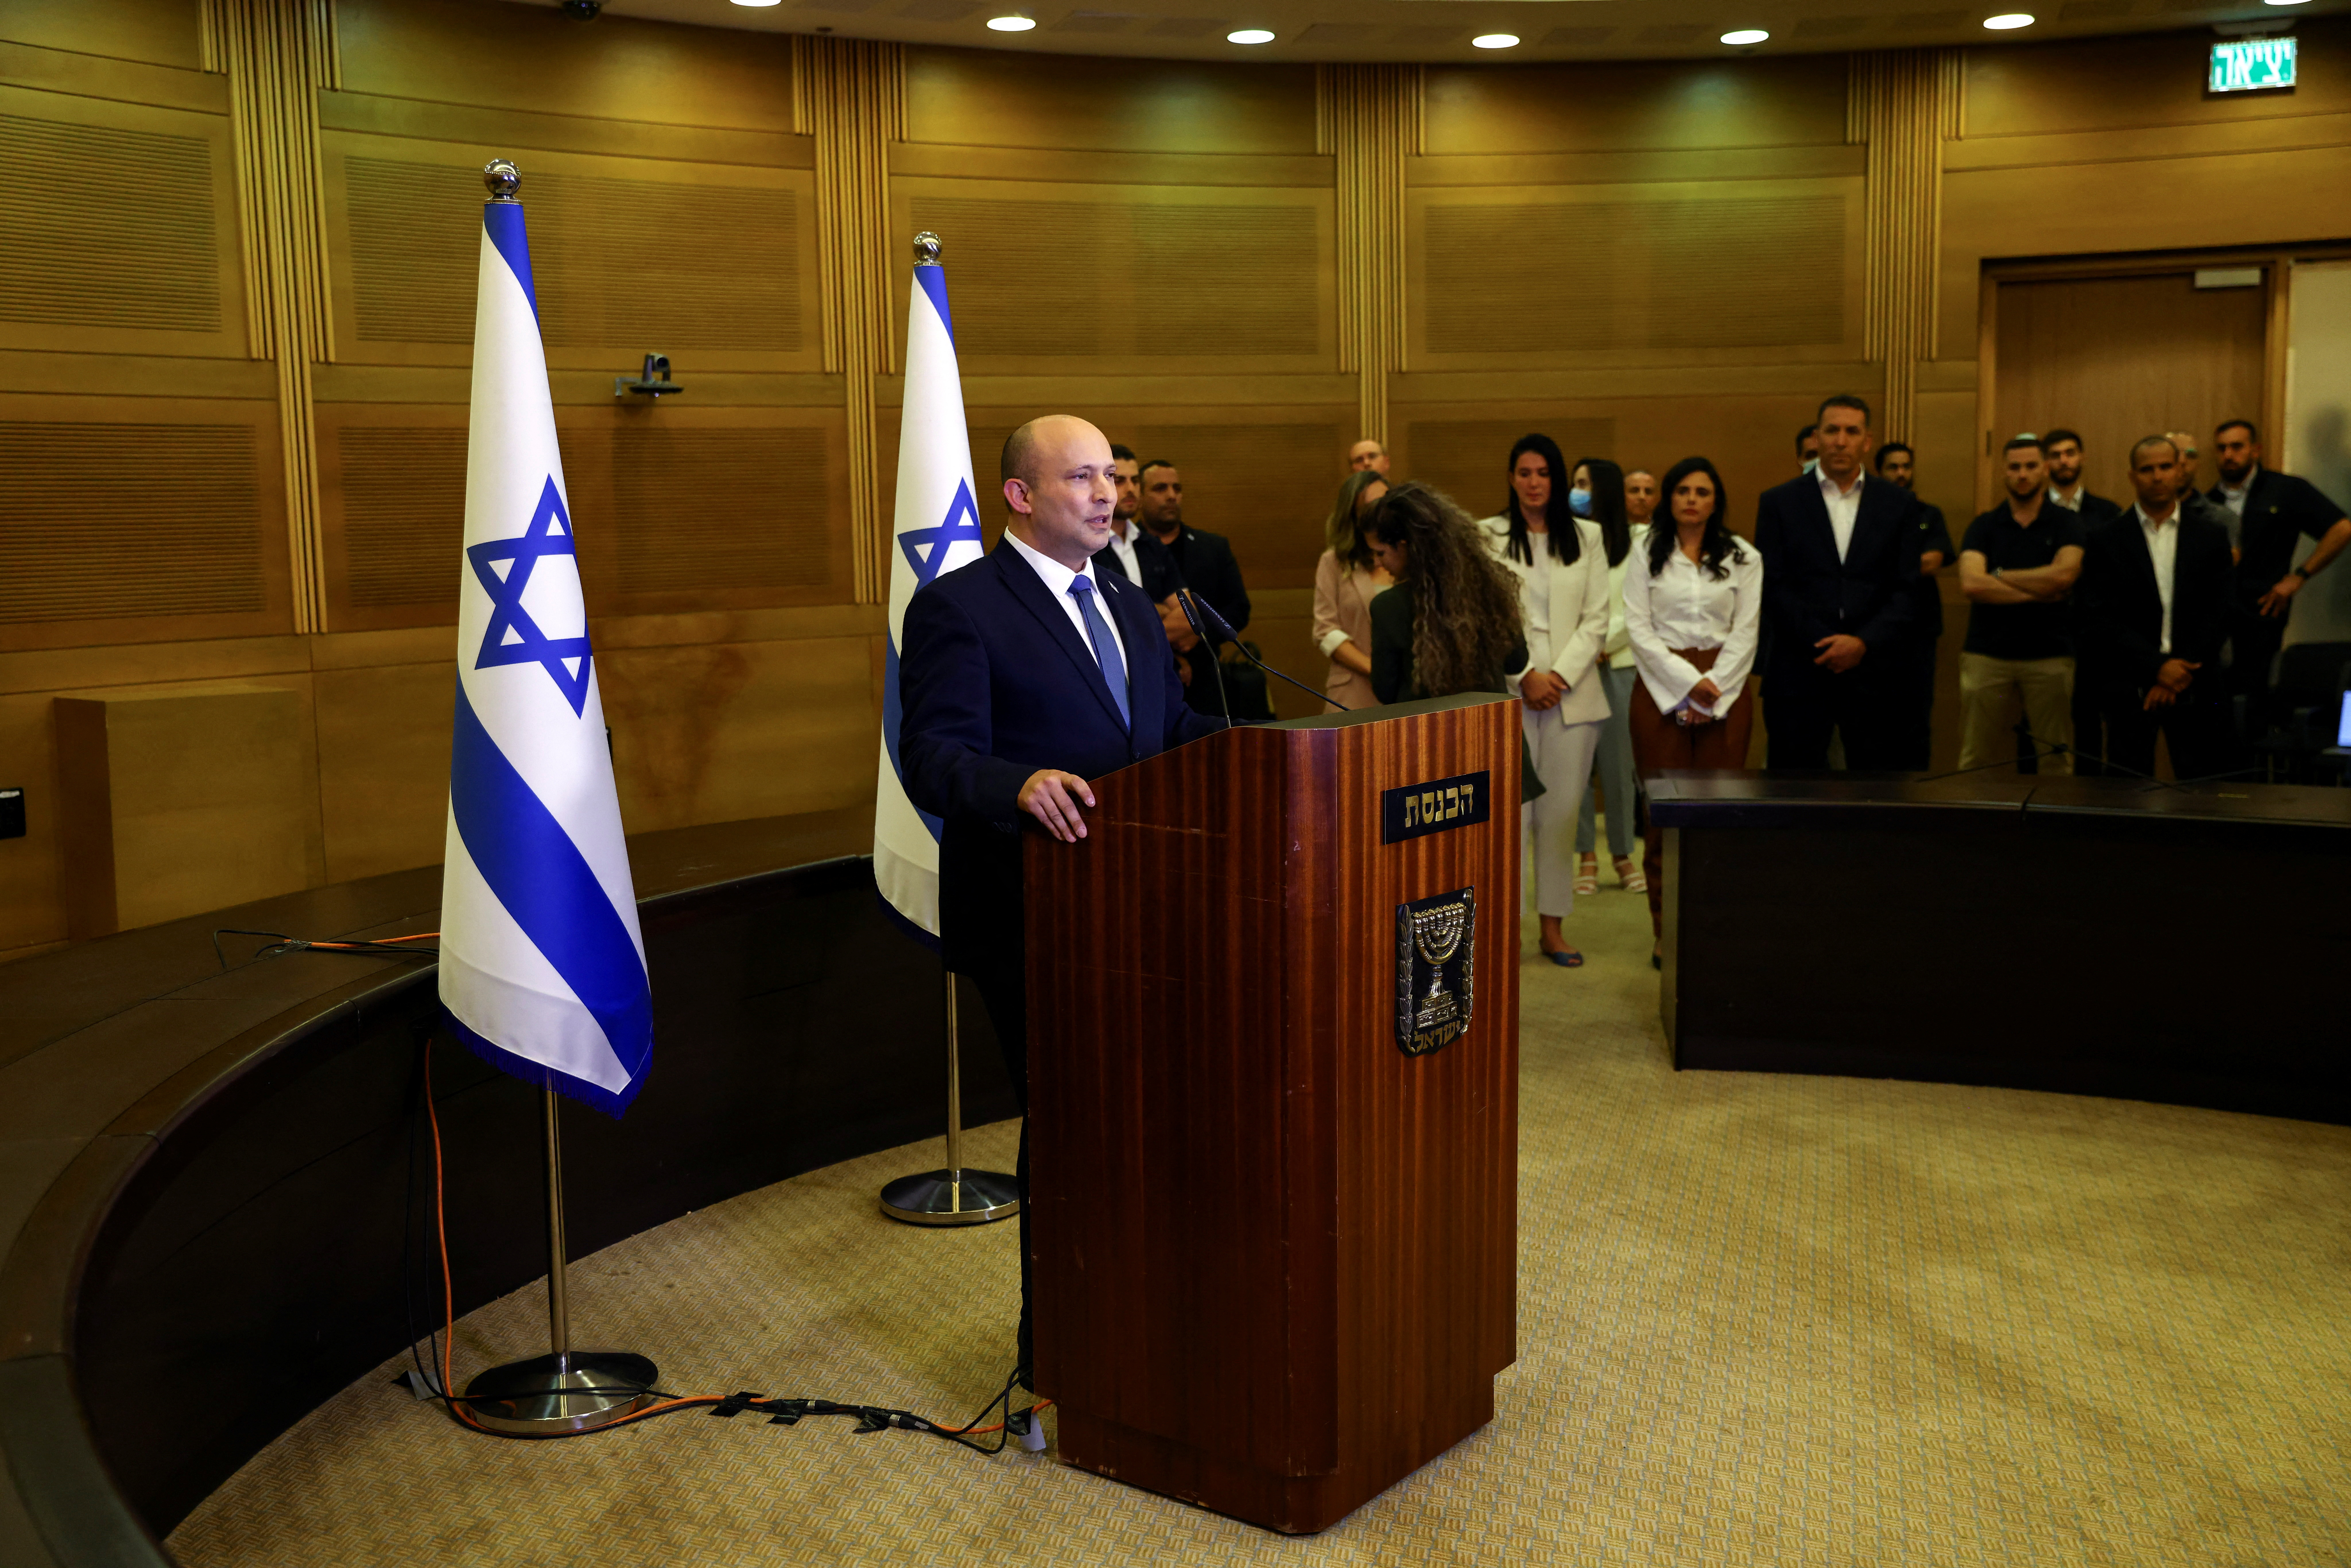 El primer ministro Naftali Bennett anunciando ante los medios que no se presentará en las próximas elecciones en Israel (REUTERS/Ronen Zvulun)